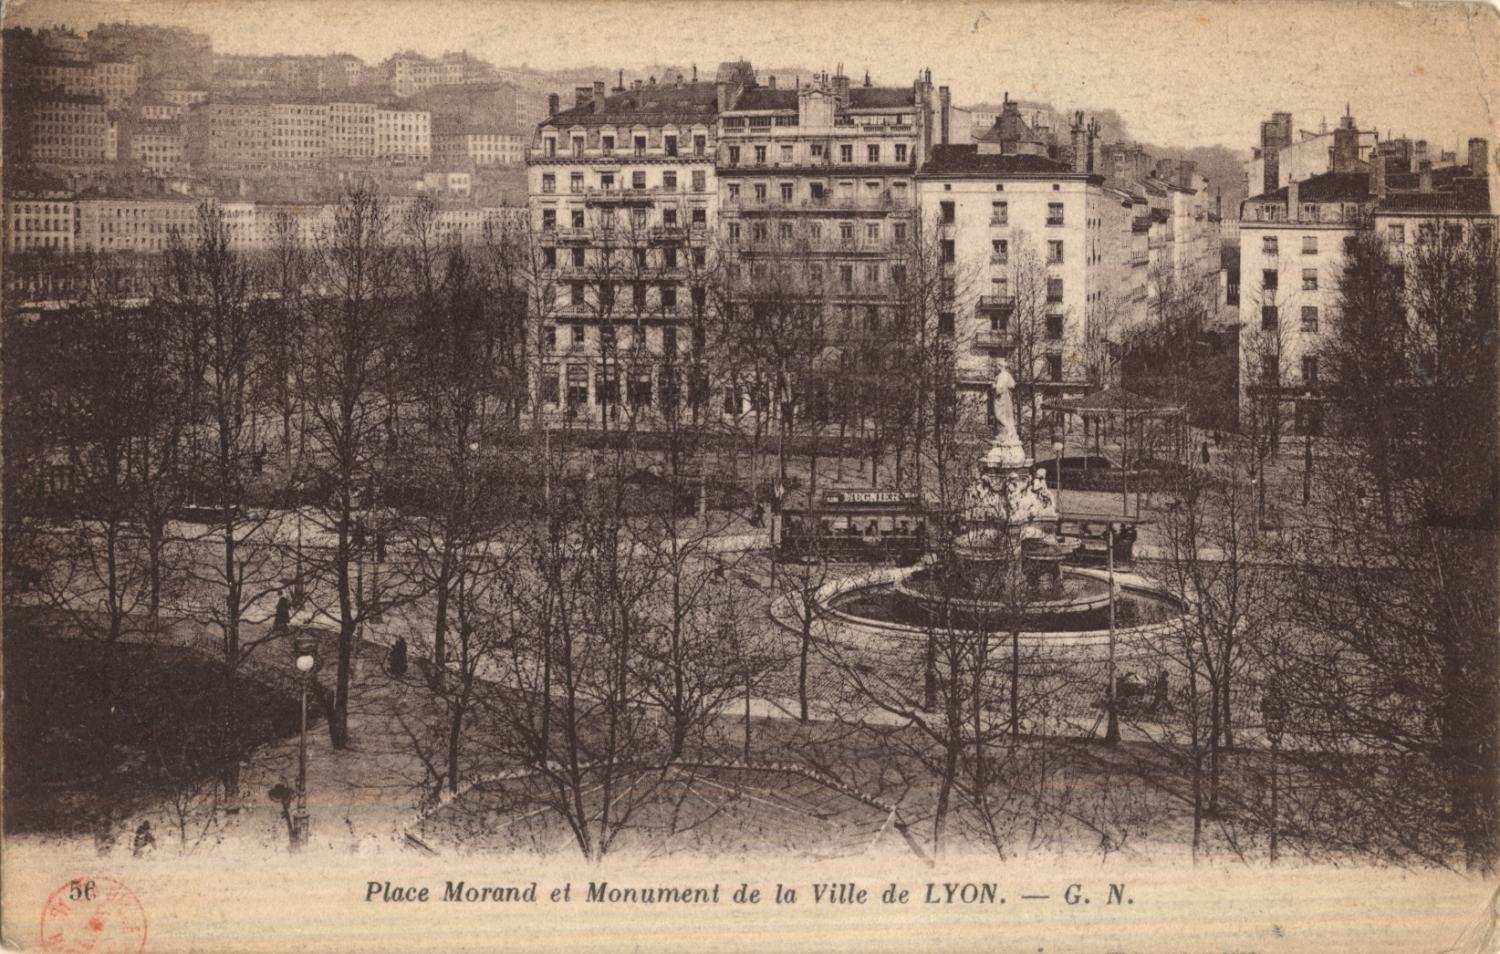 Lyon : Place Morand et Monument de la Ville de Lyon